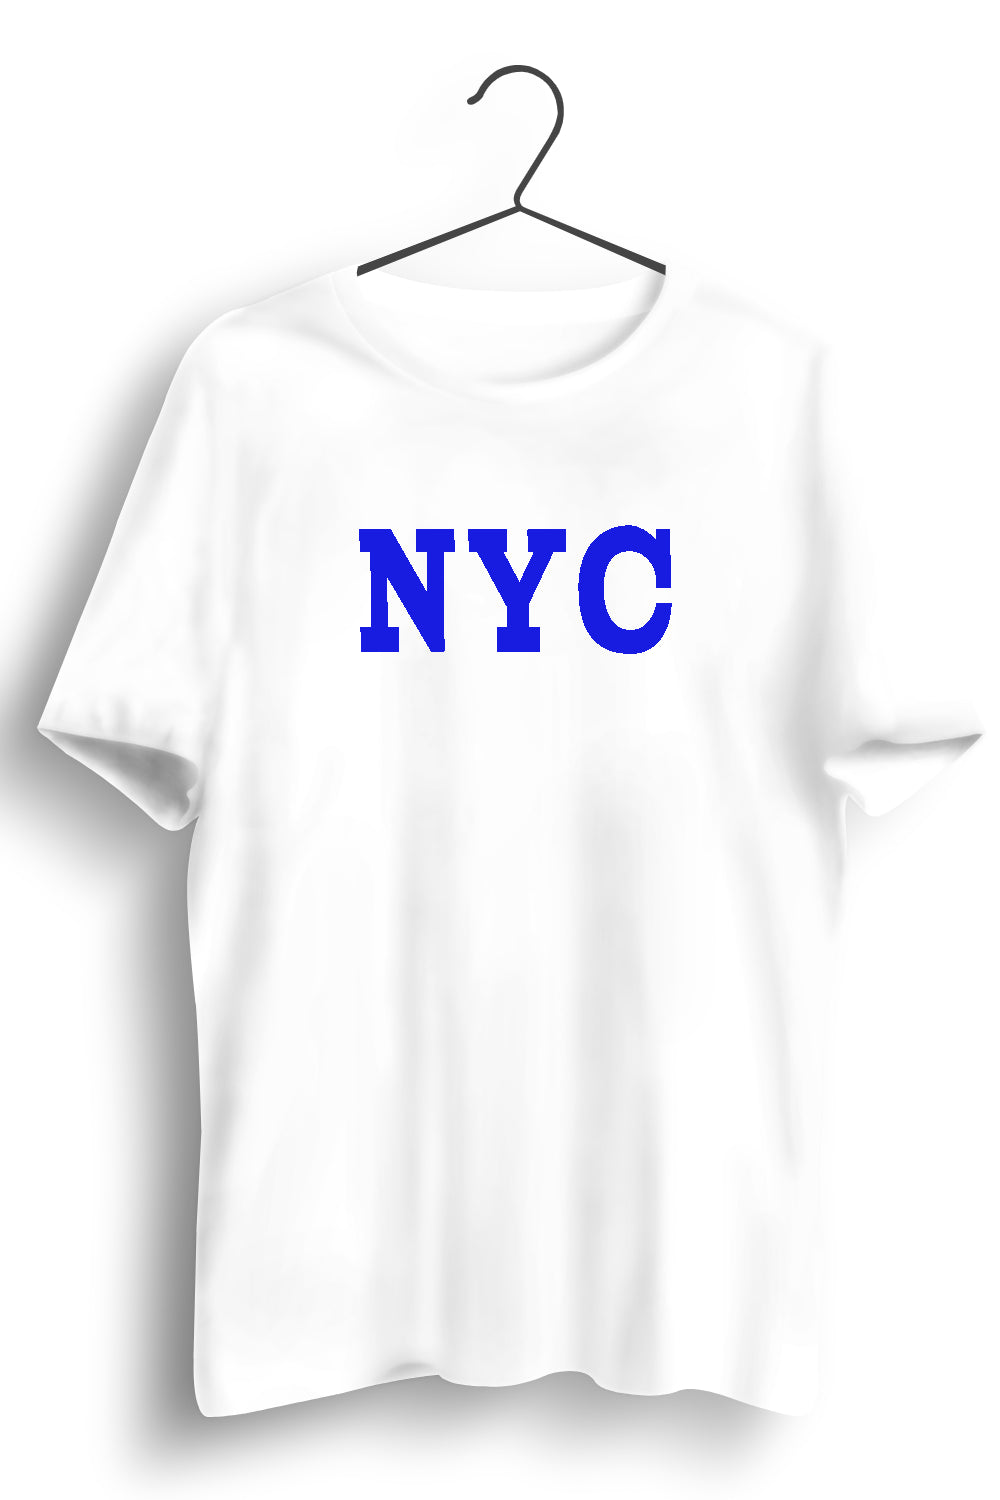 NYC Graphic Printed White Tshirt